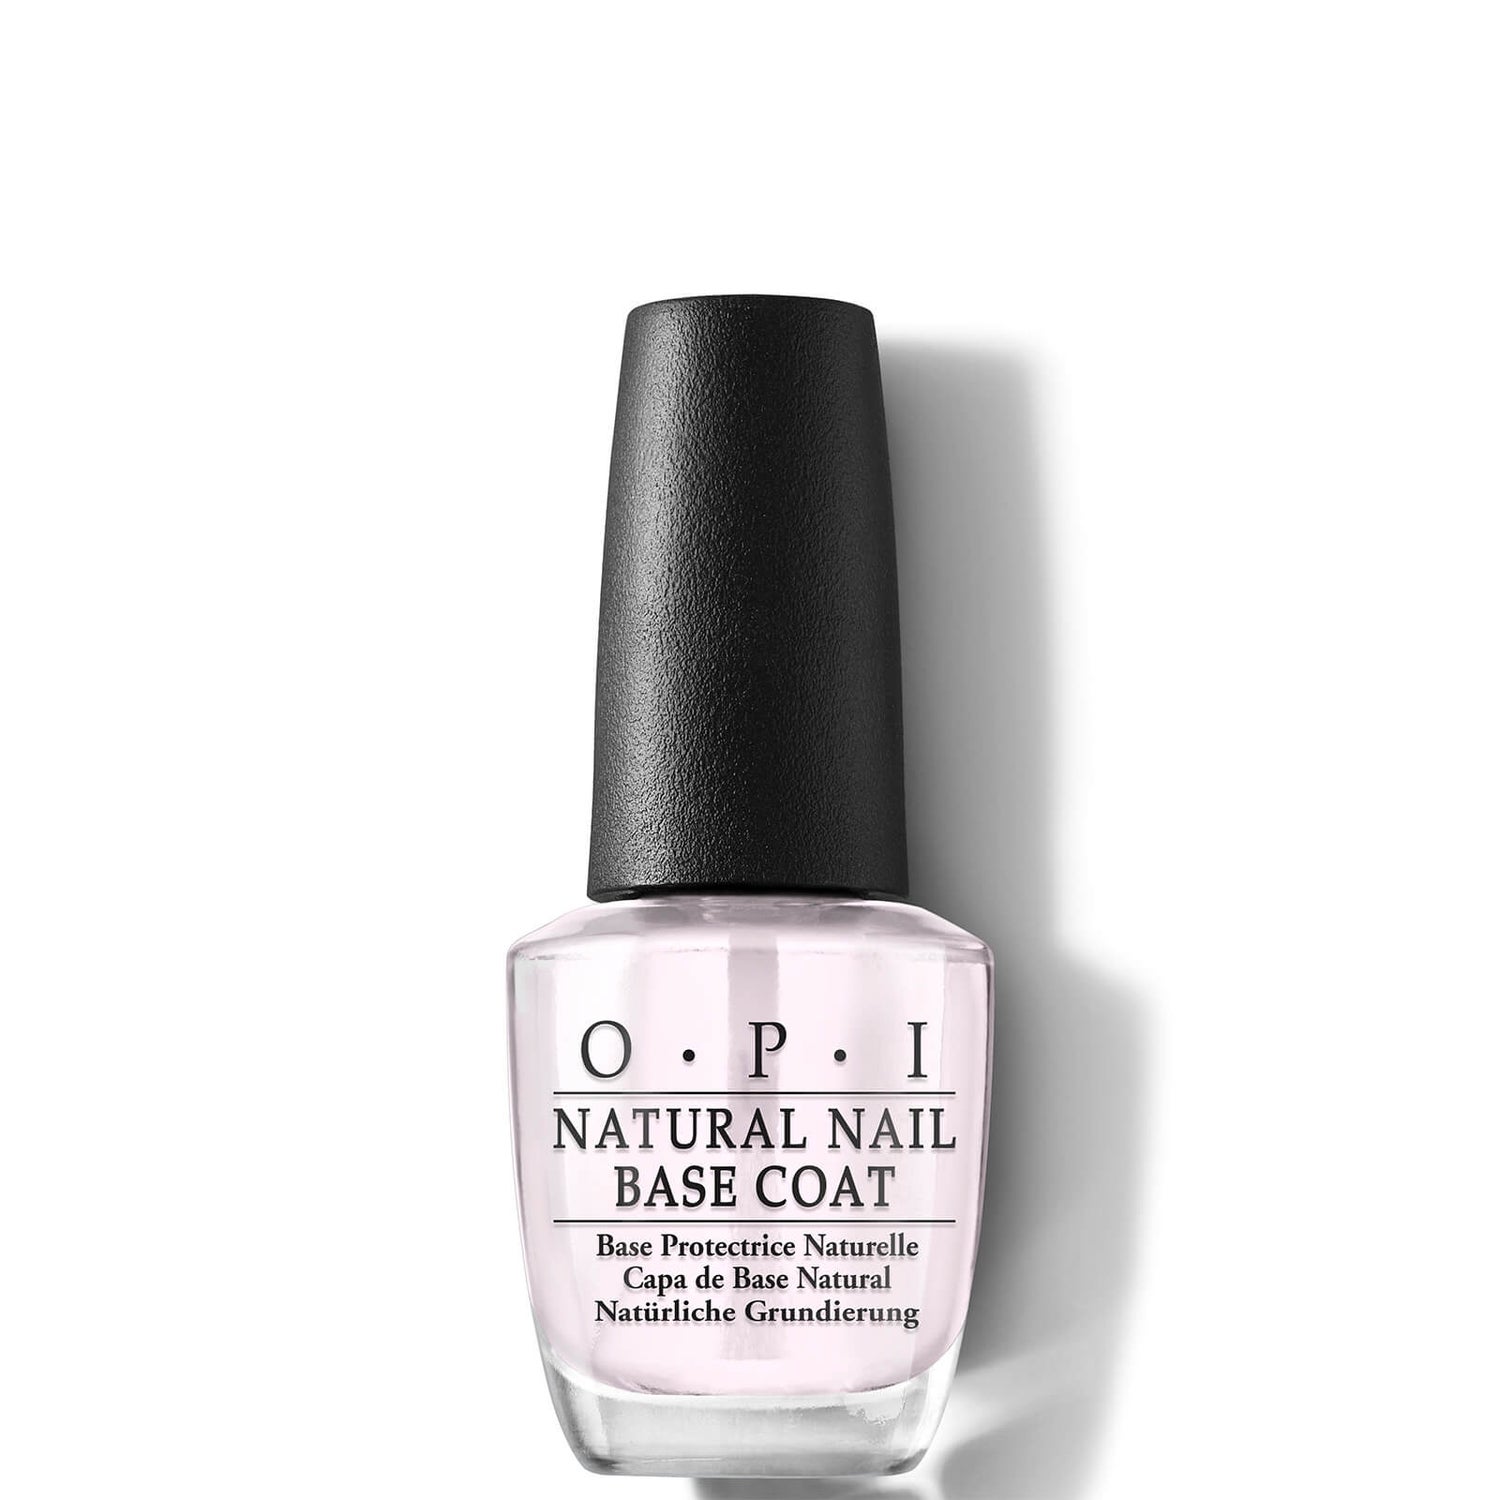 OPI Natural Nail Base Coat 15ml